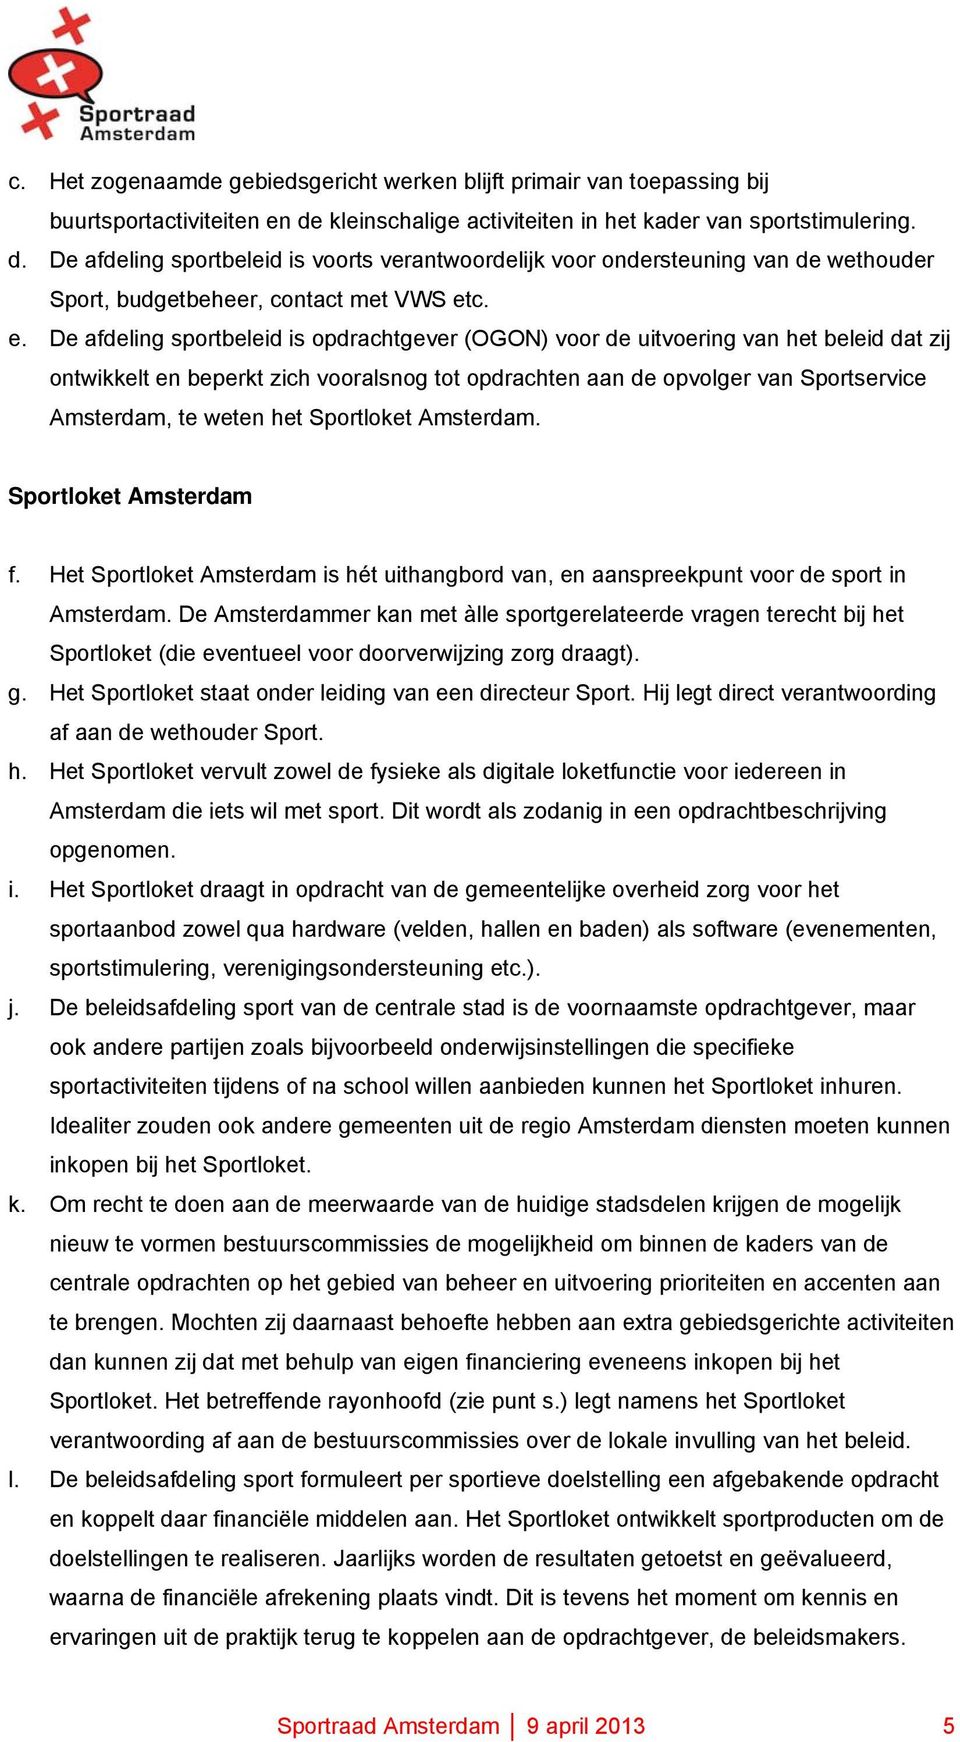 c. e. De afdeling sportbeleid is opdrachtgever (OGON) voor de uitvoering van het beleid dat zij ontwikkelt en beperkt zich vooralsnog tot opdrachten aan de opvolger van Sportservice Amsterdam, te